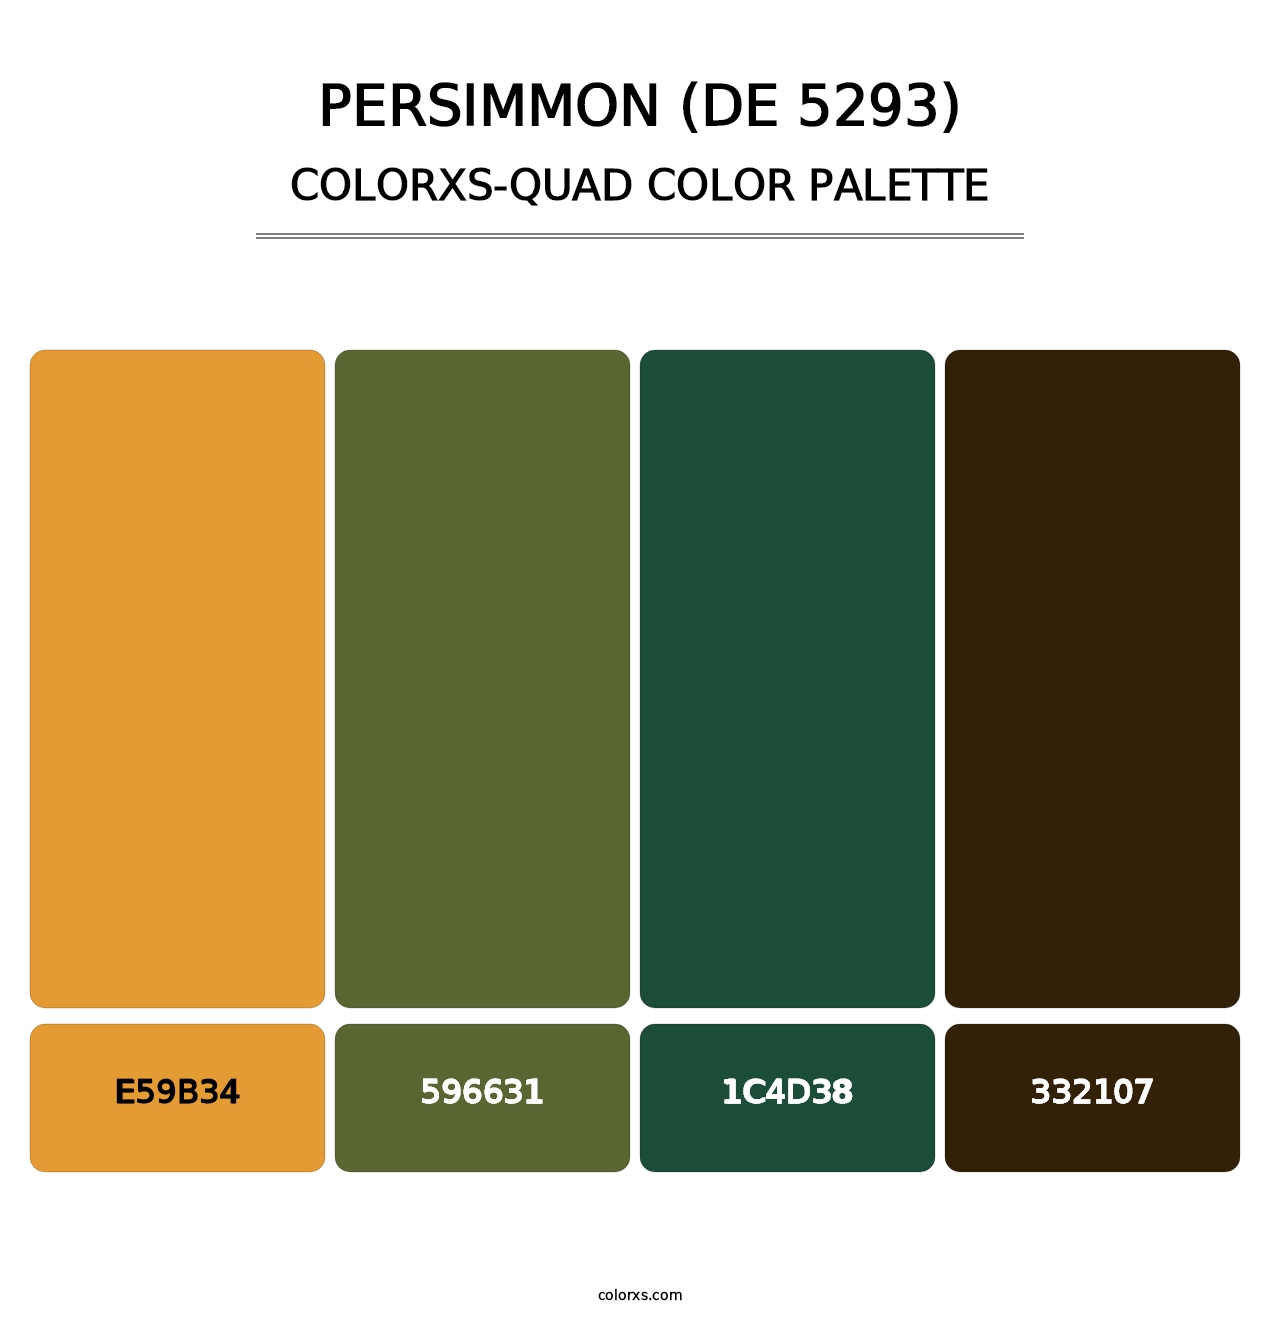 Persimmon (DE 5293) - Colorxs Quad Palette